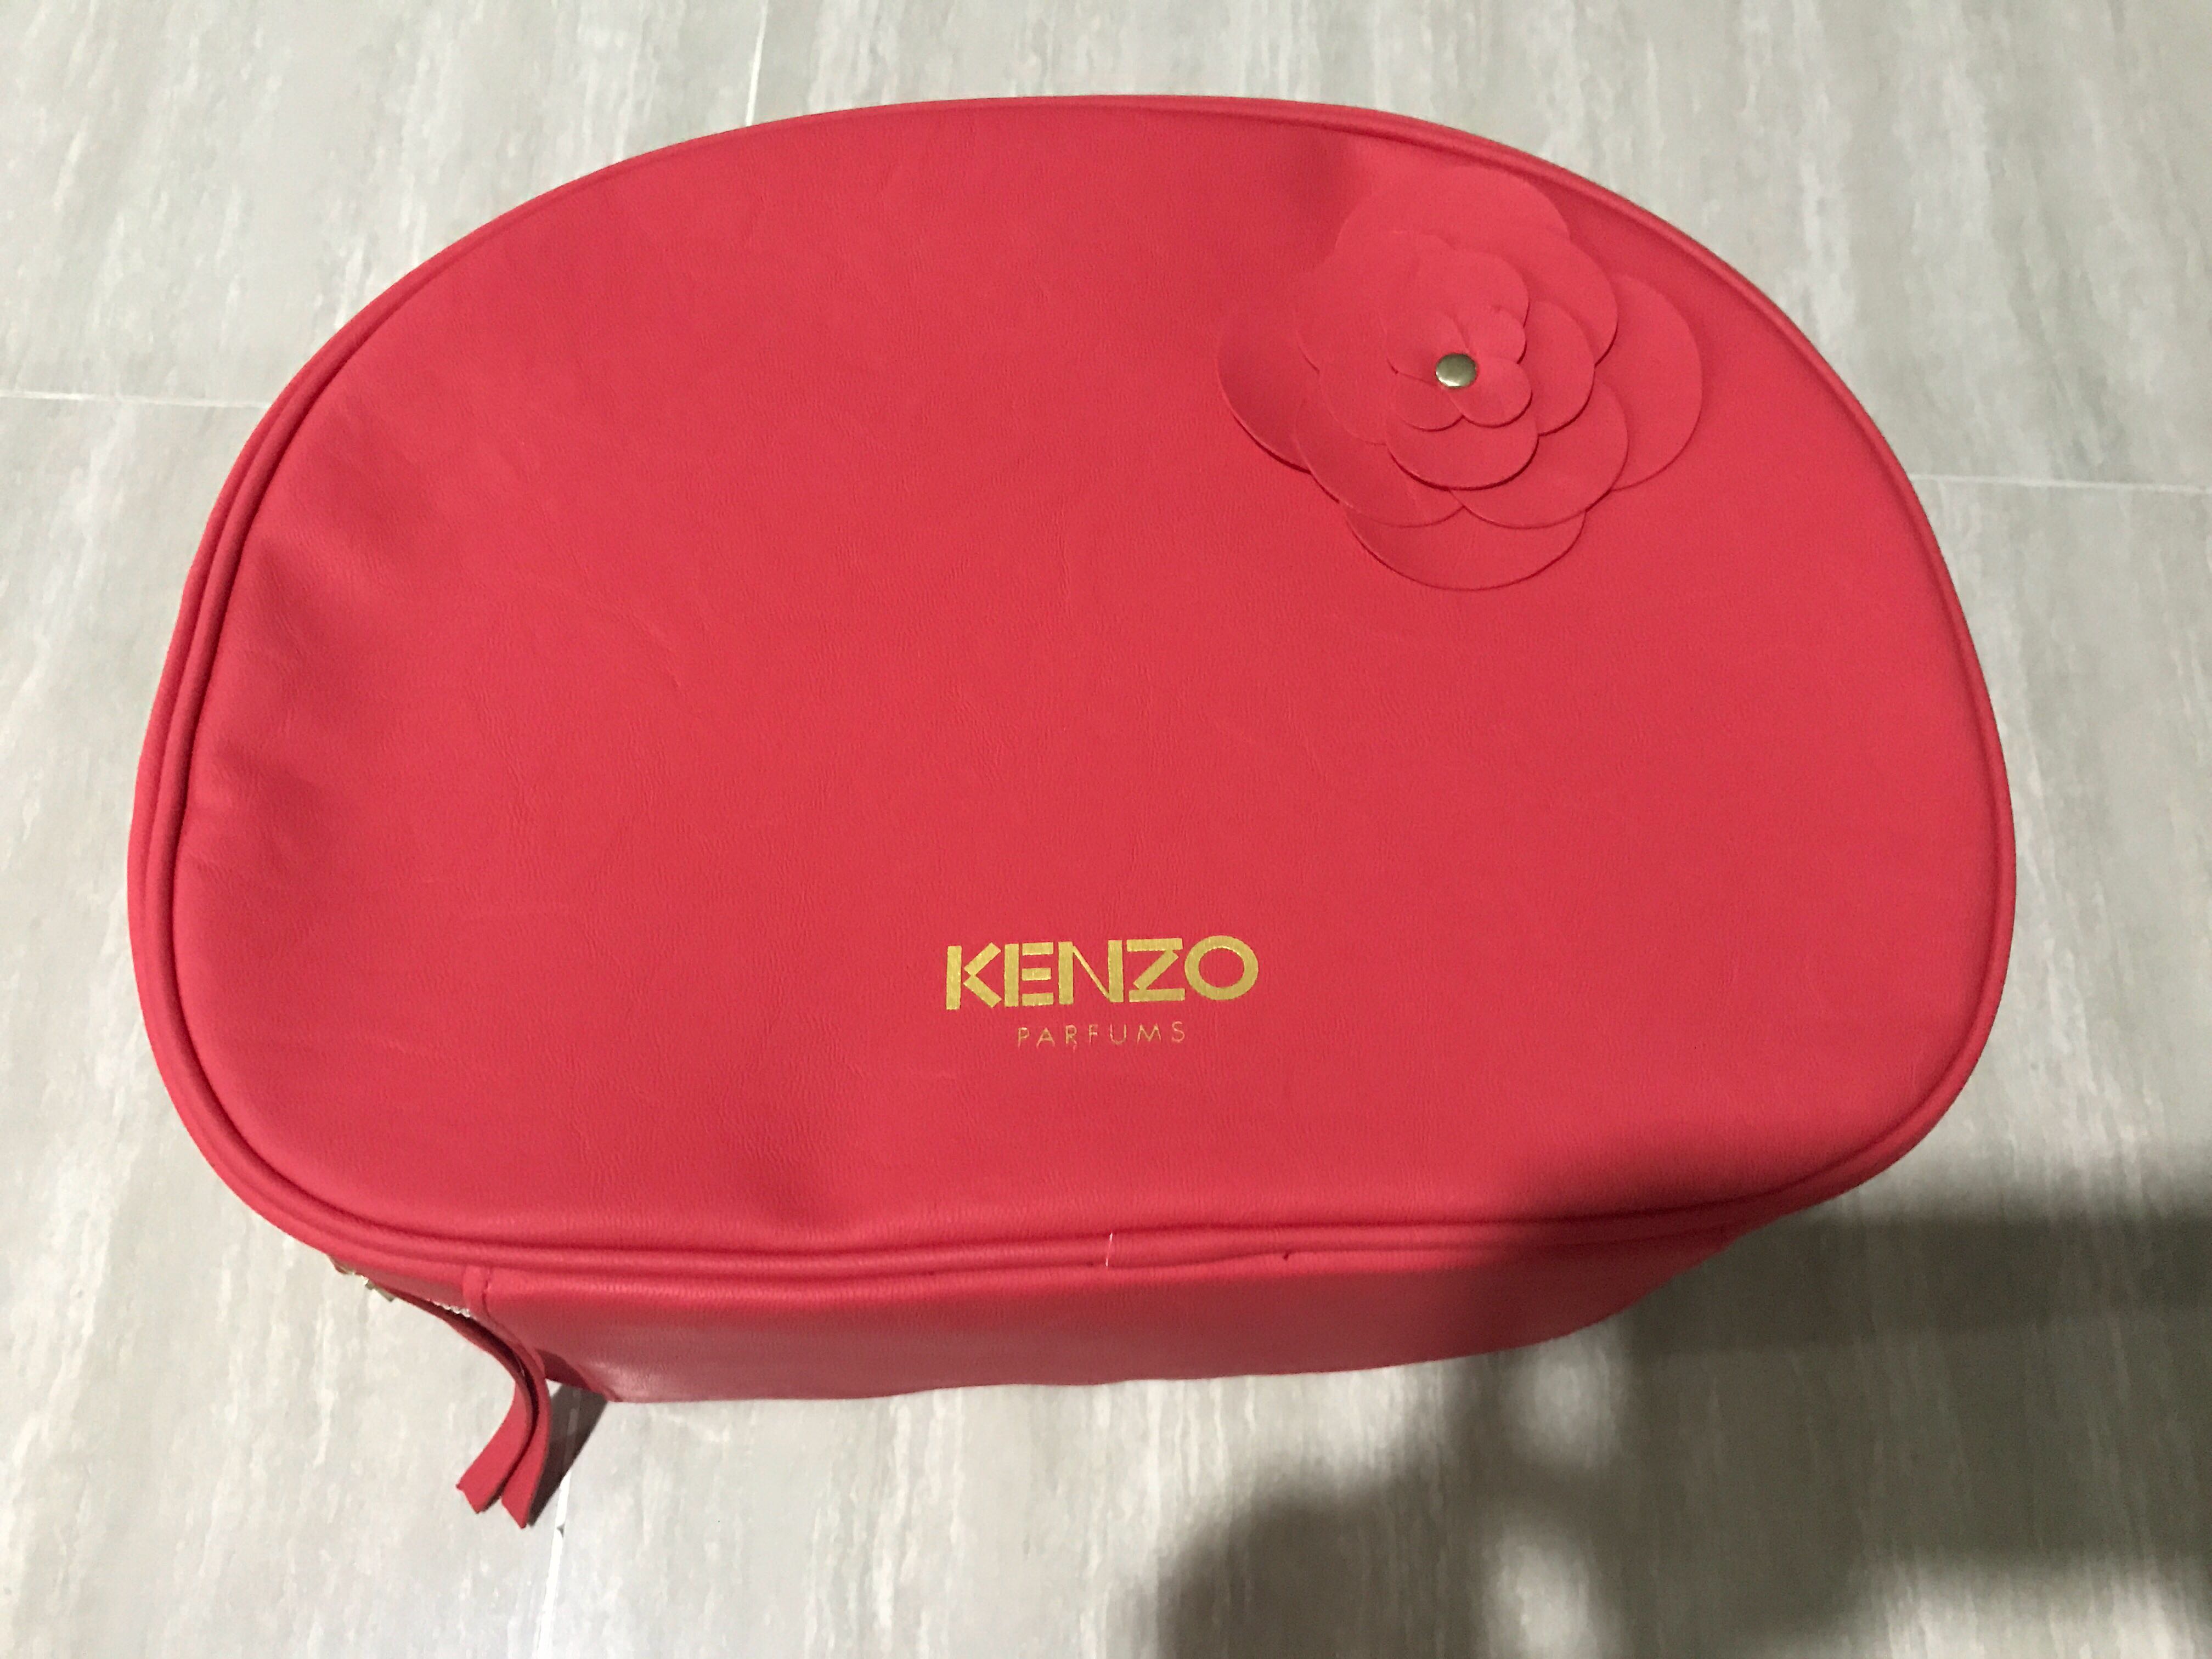 kenzo makeup bag, Women's Fashion, Bags 